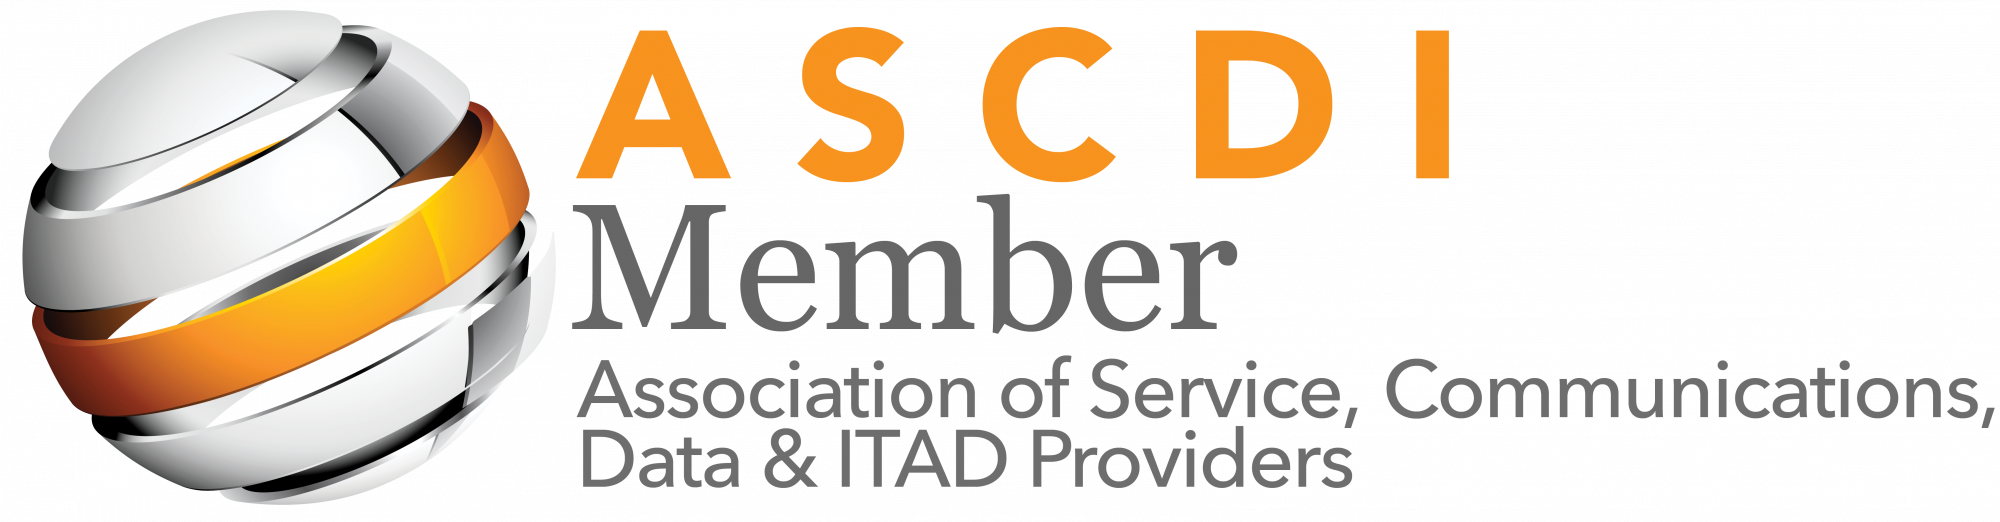 ASCDI Membership